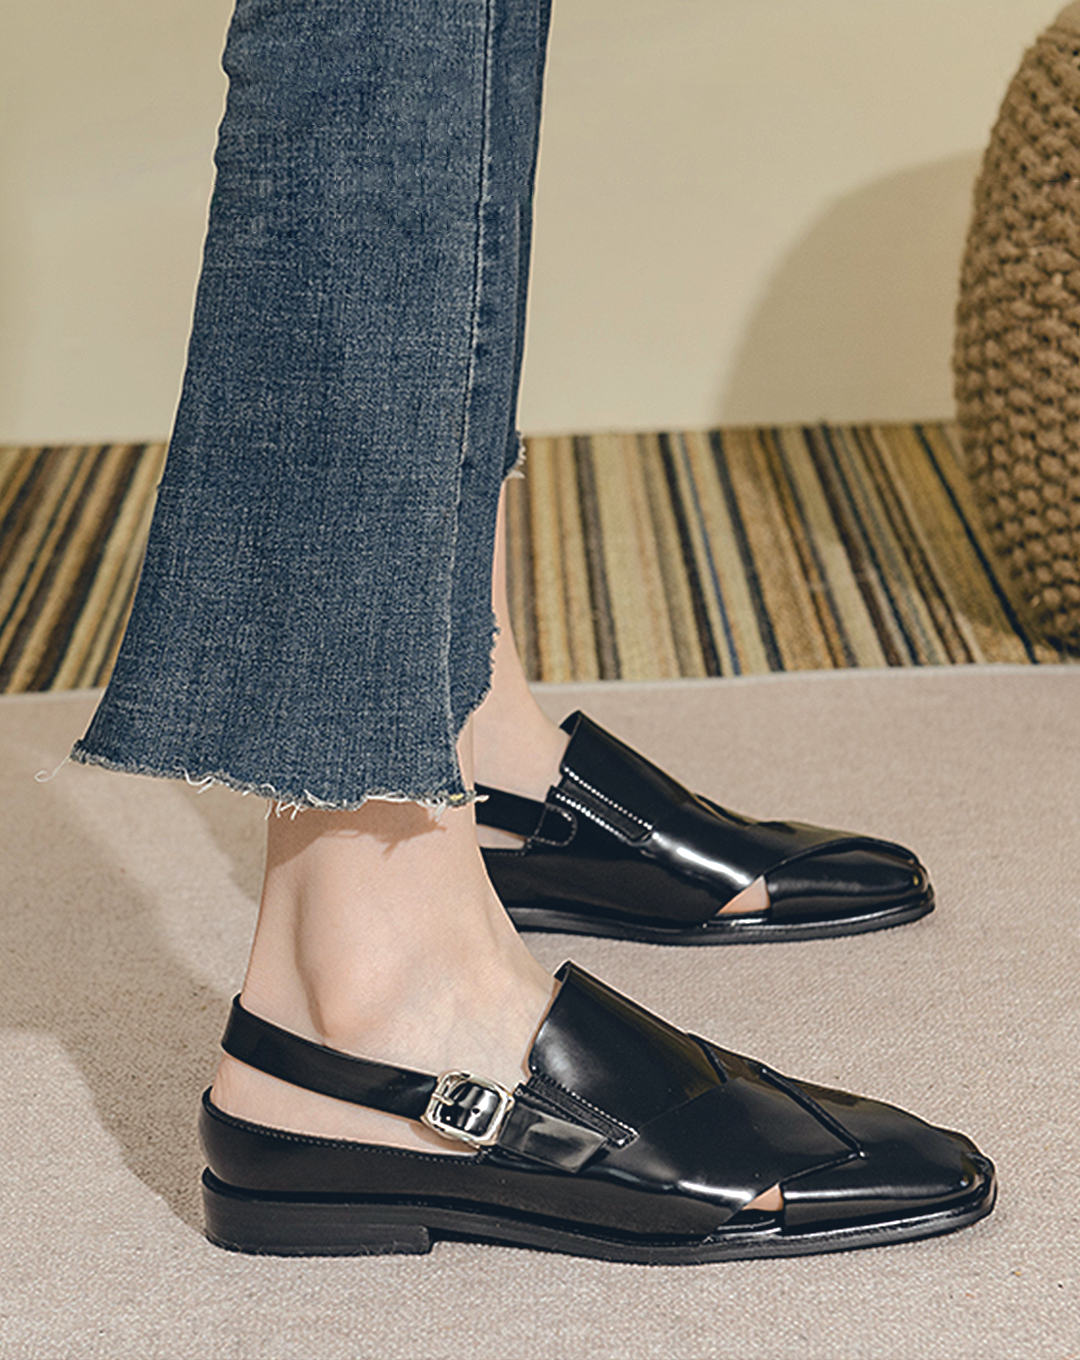 ♀Cross Design Back Strap Sandals